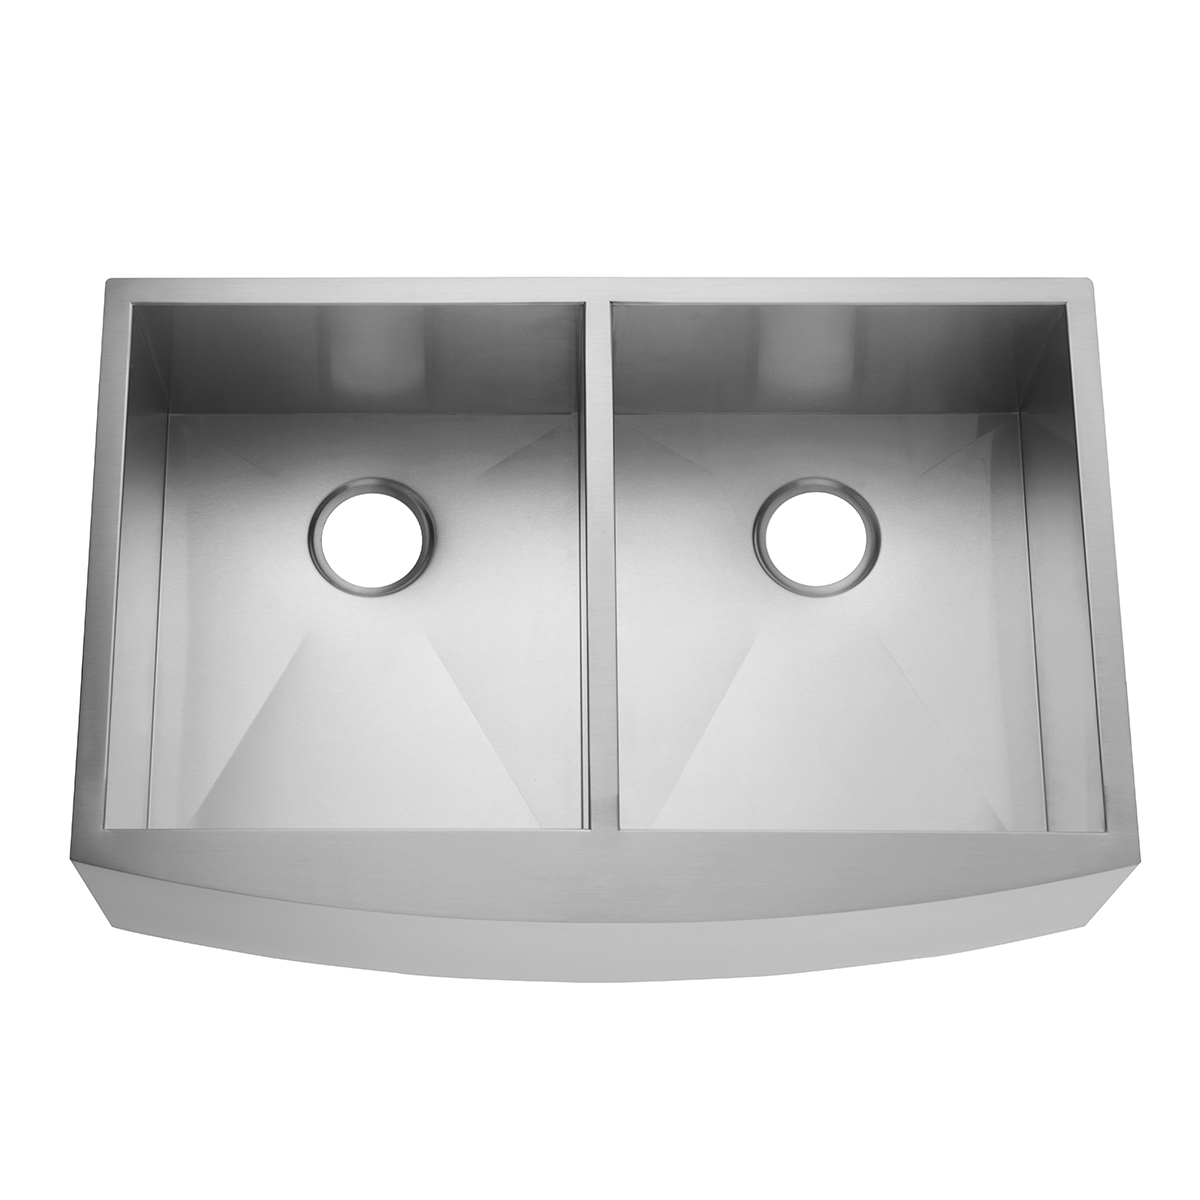 Handgefertigte Doppelschüssel-Küchenspüle aus Edelstahl im Landhausstil mit Schürzenfront